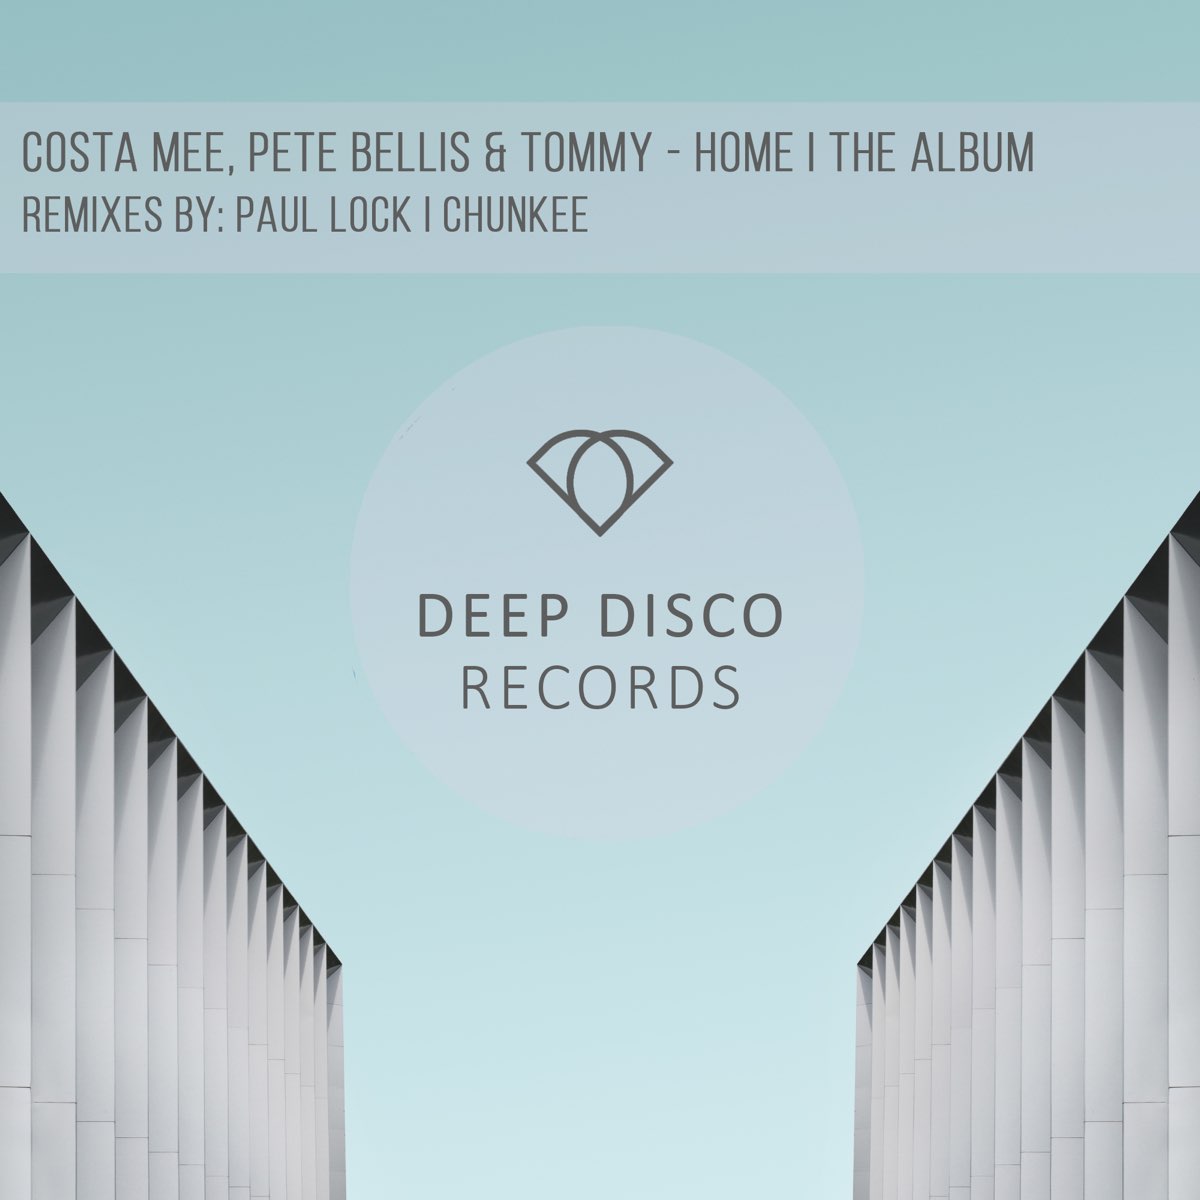 Costa mee pete bellis tommy remix. Costa mee & Pete Bellis. Pete Bellis & Tommy. Paul Lock, Pete Bellis & Tommy. Costa mee исполнитель.